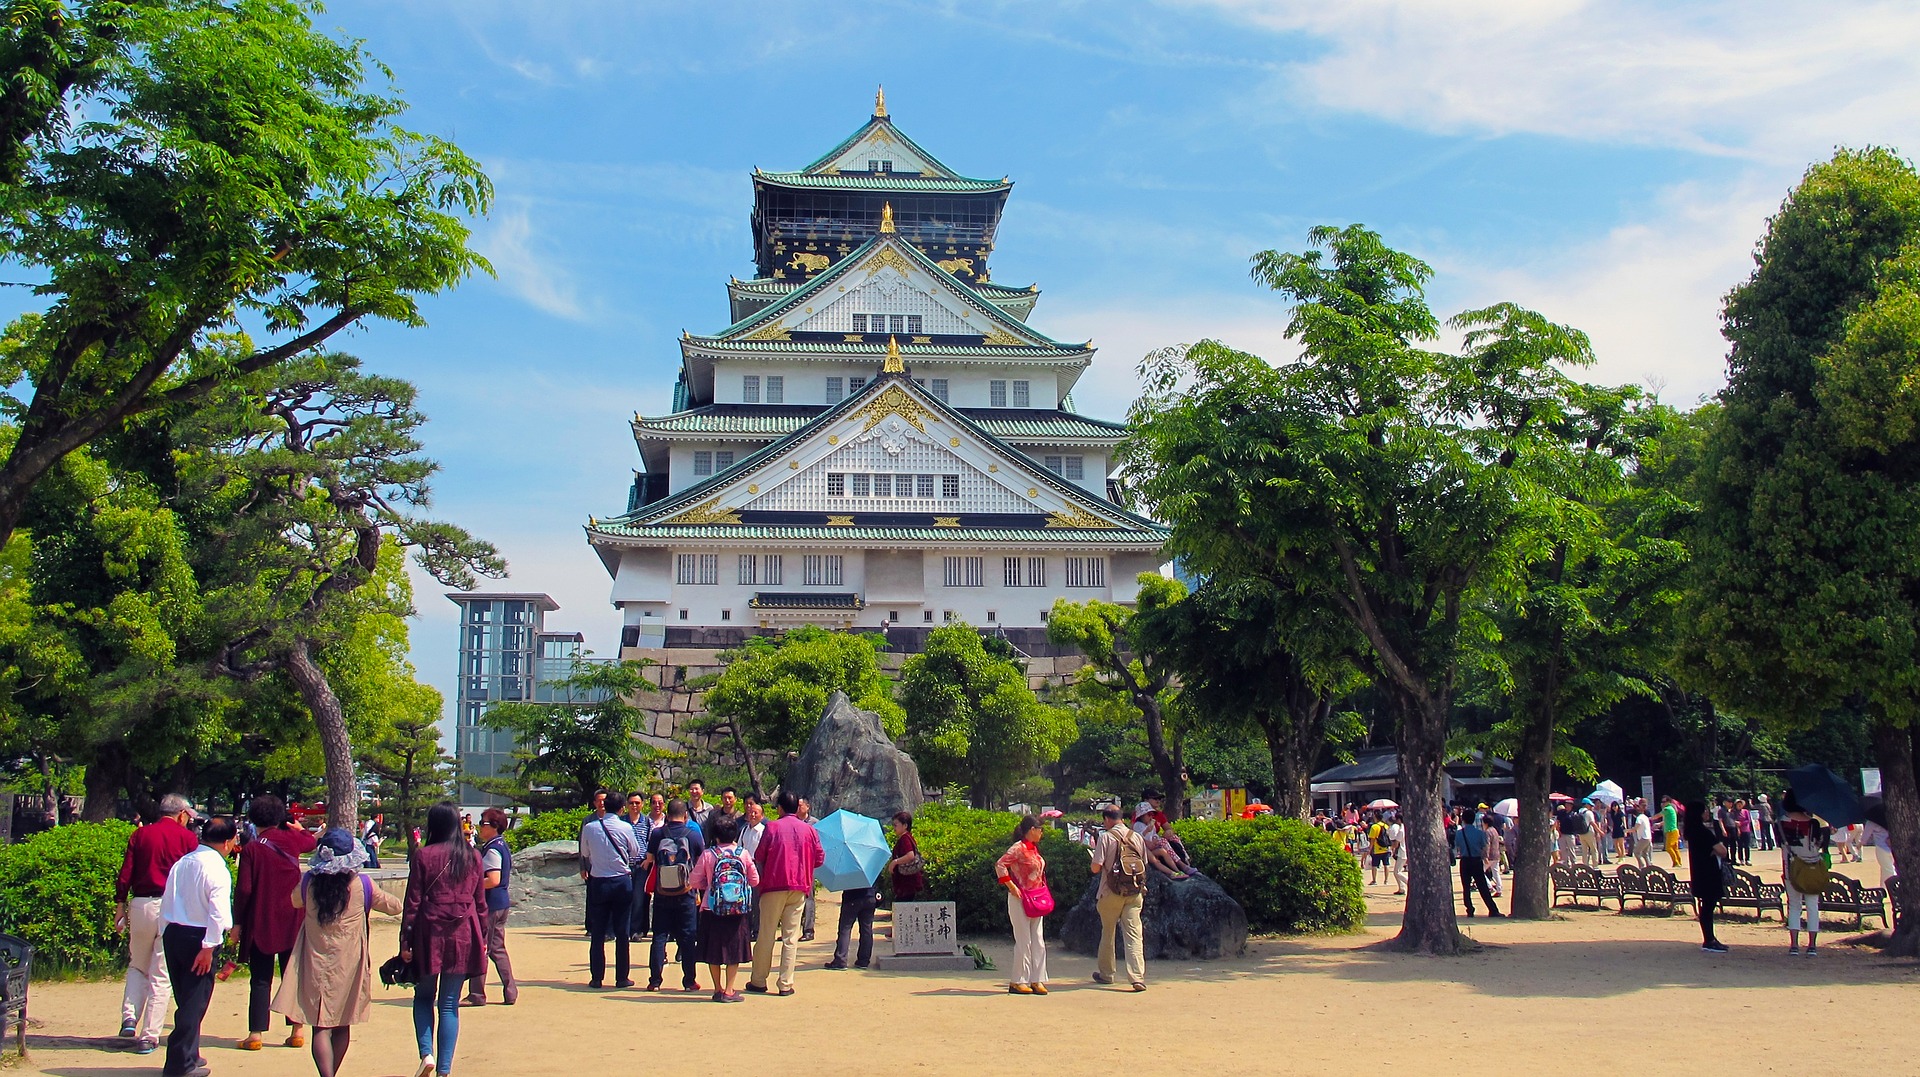 Das Schloss von Osaka in Japan.